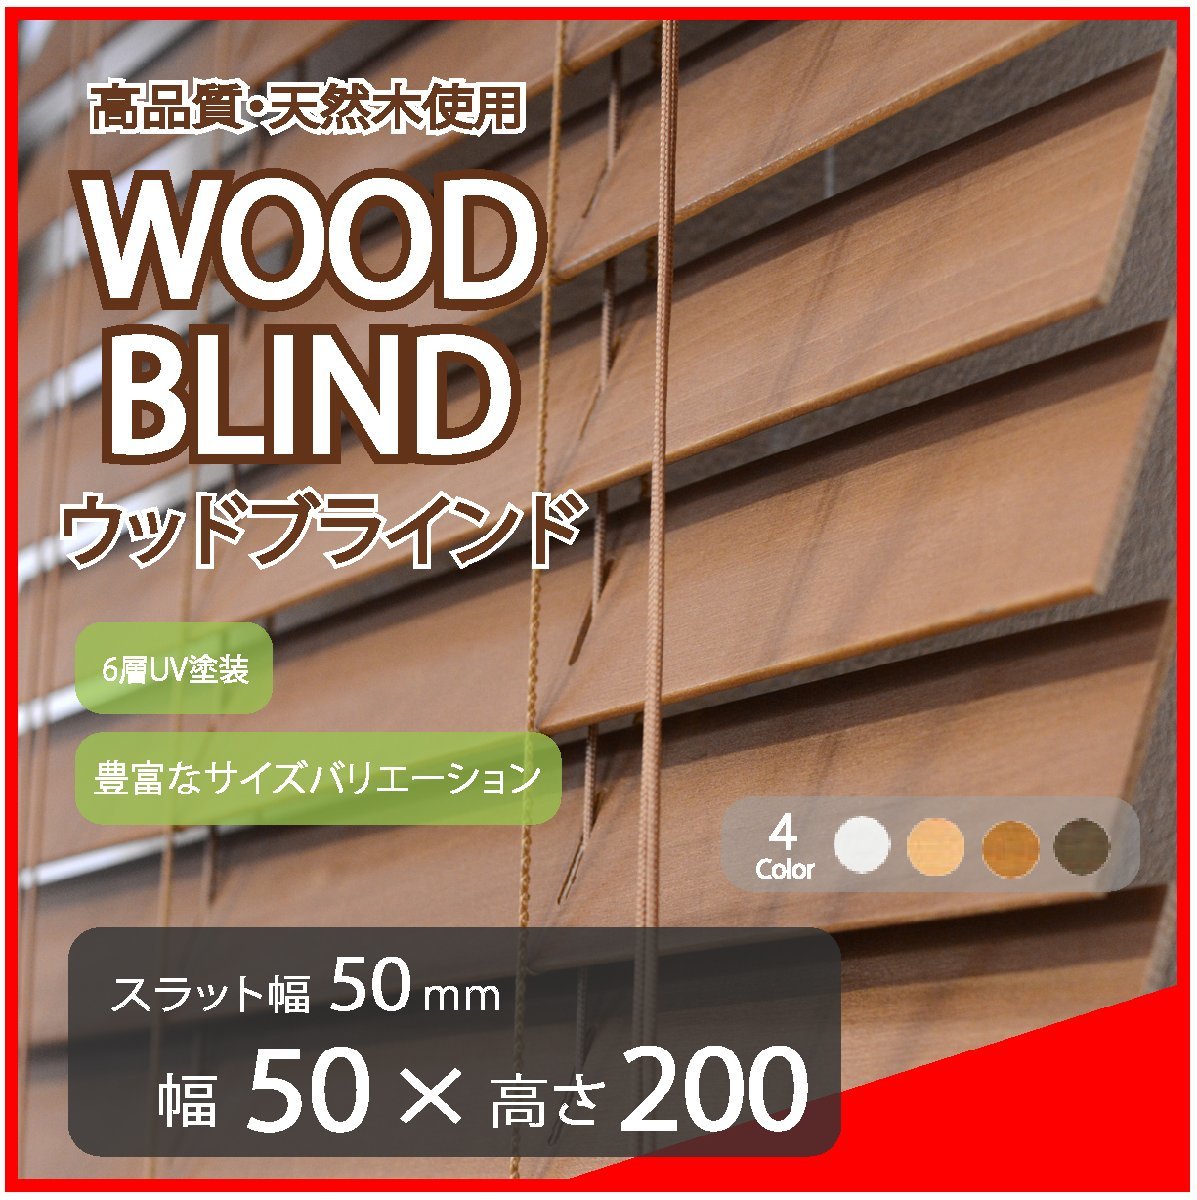 国産品 高品質 ブラウン 幅50cm×高さ200cm スラット(羽根)幅50mm 既成サイズ ブラインド 木製 ウッドブラインド ブラインド